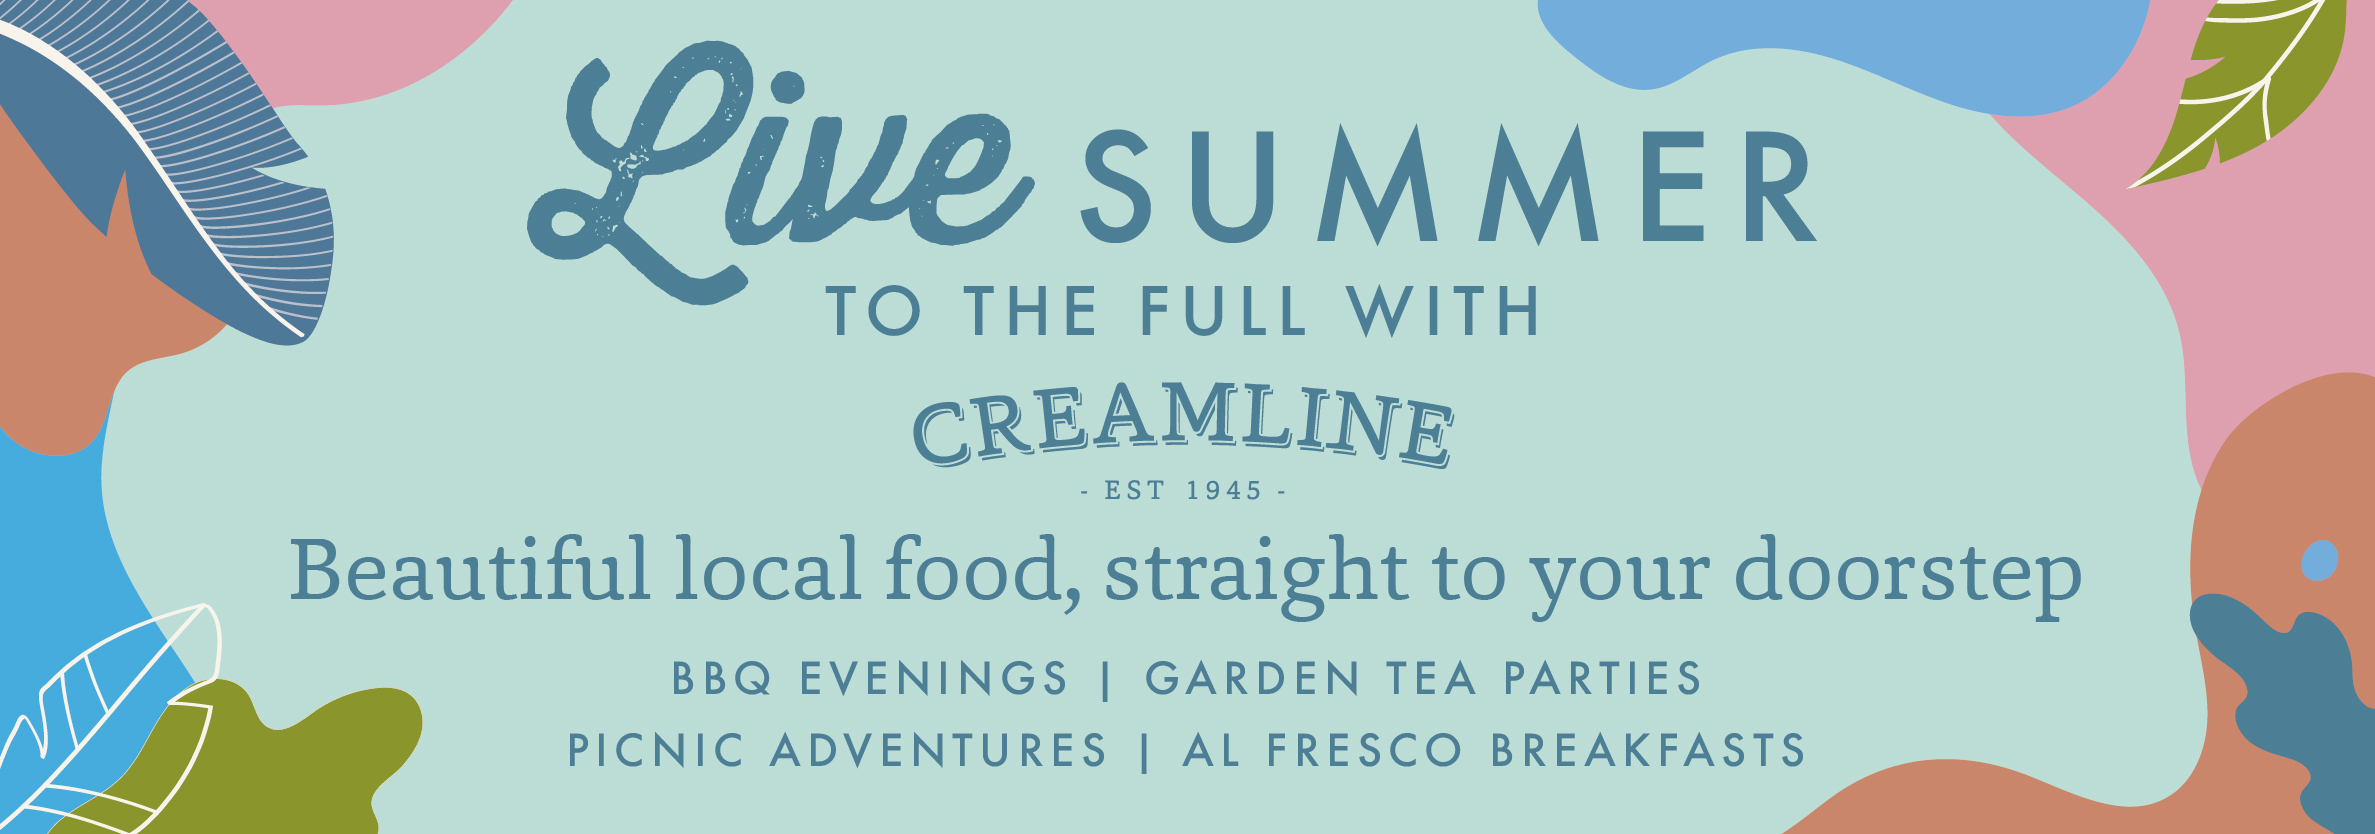 Summer Living banner 1